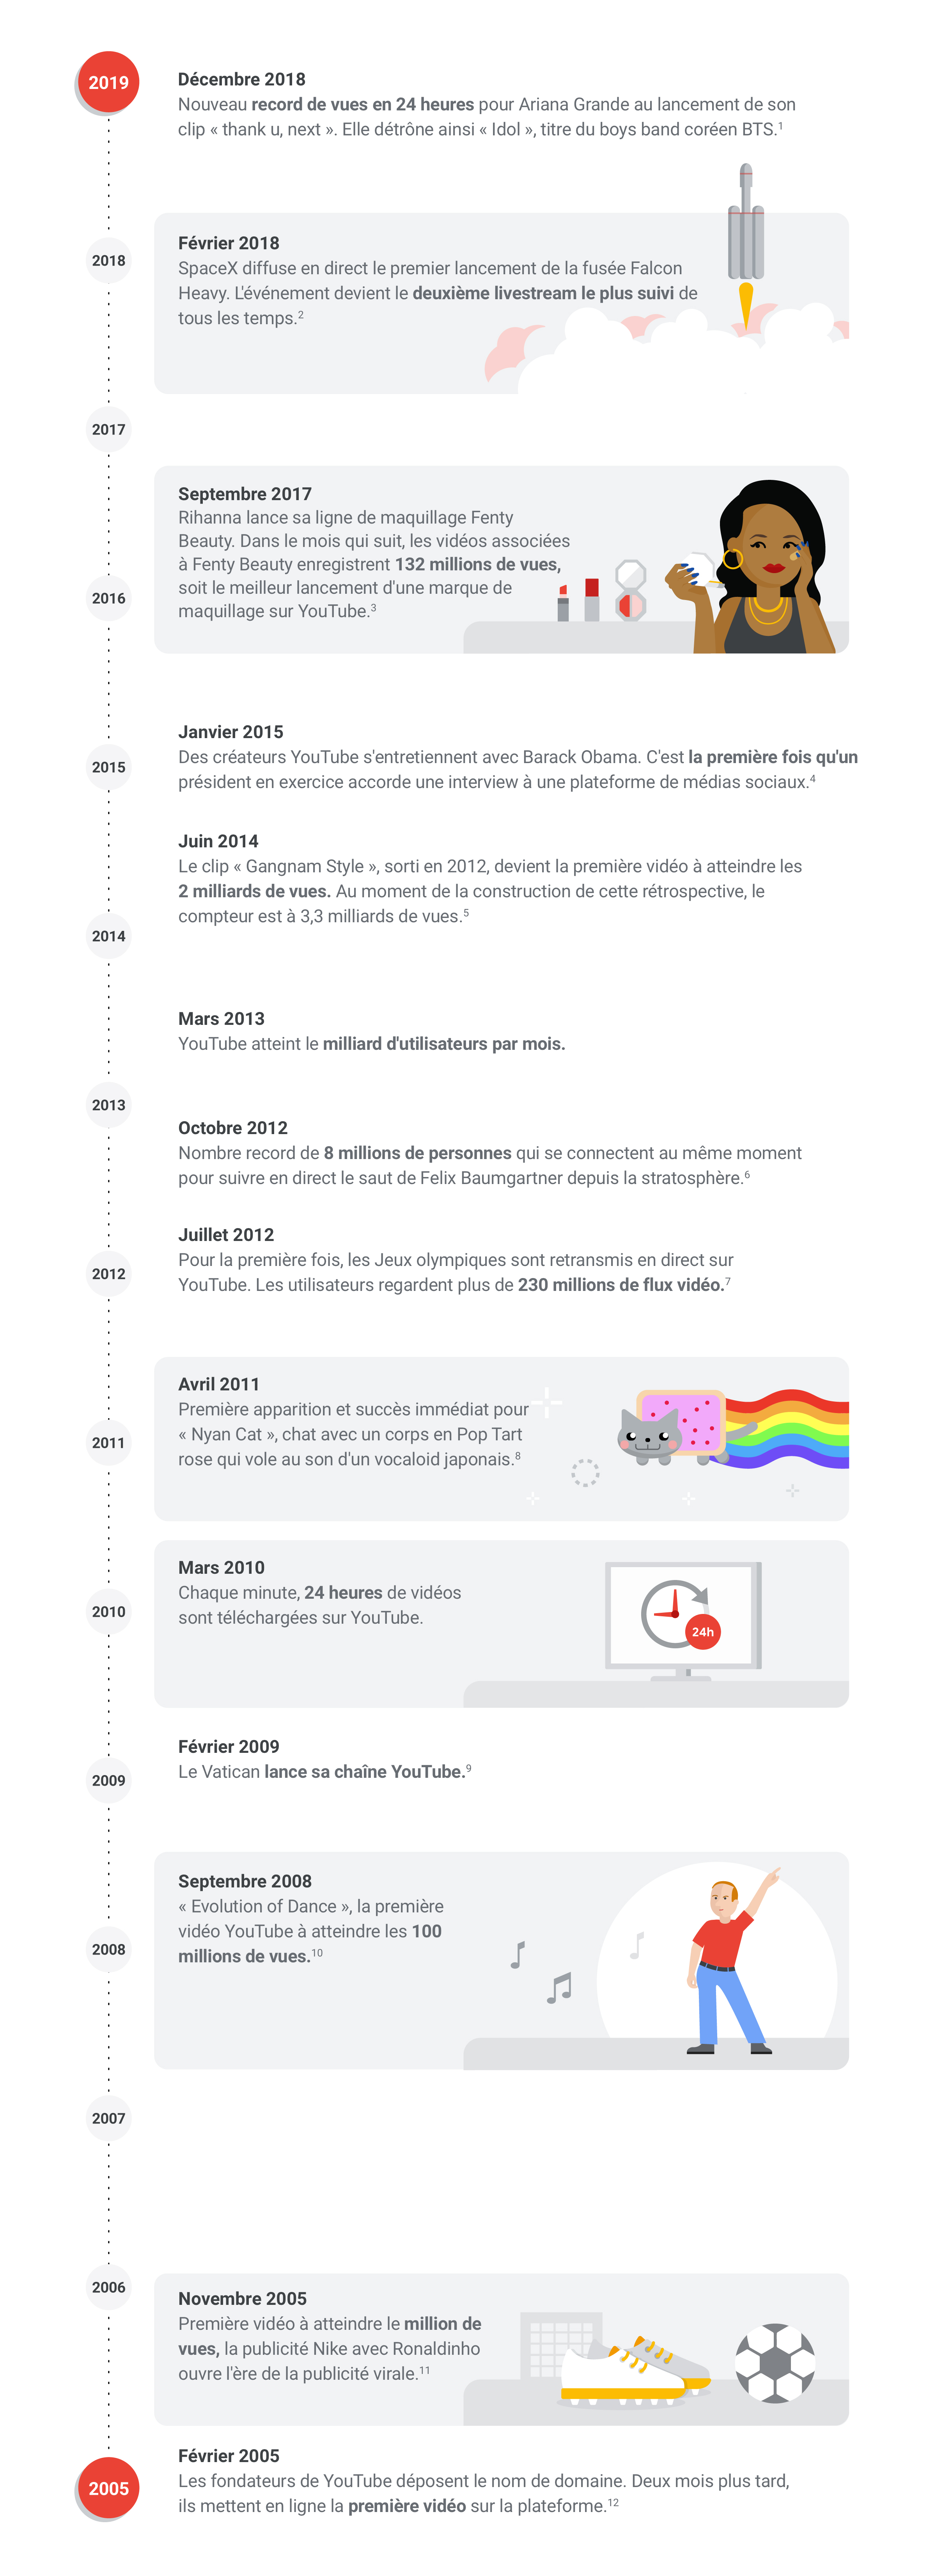 Infographie YouTube sur l'évolution de son utilisation entre 2005 et décembr 2018.